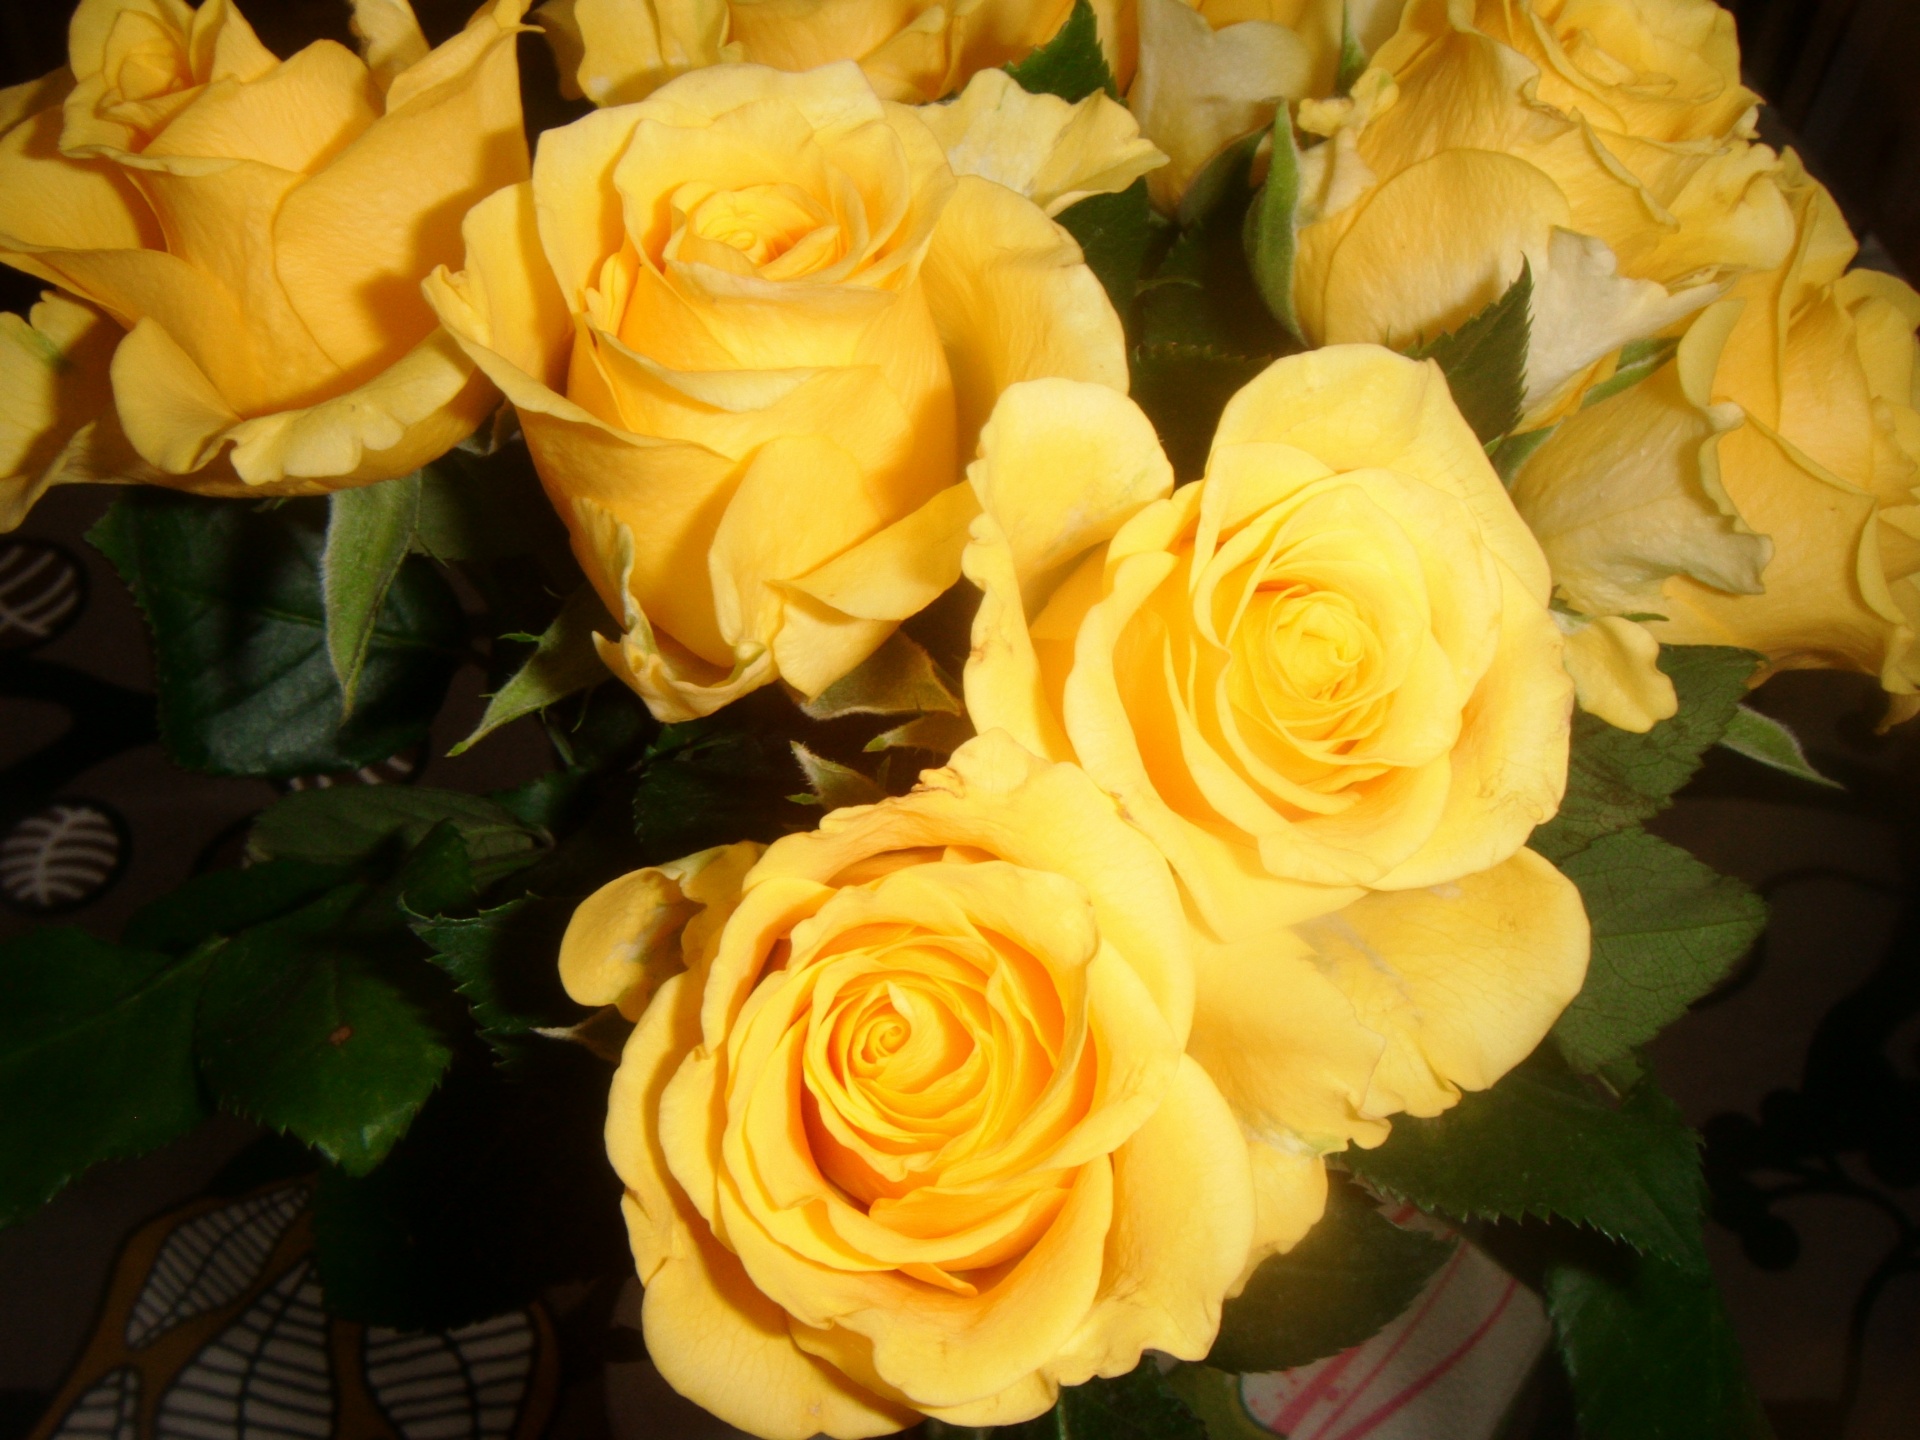 黄玫瑰高清图片-千叶网